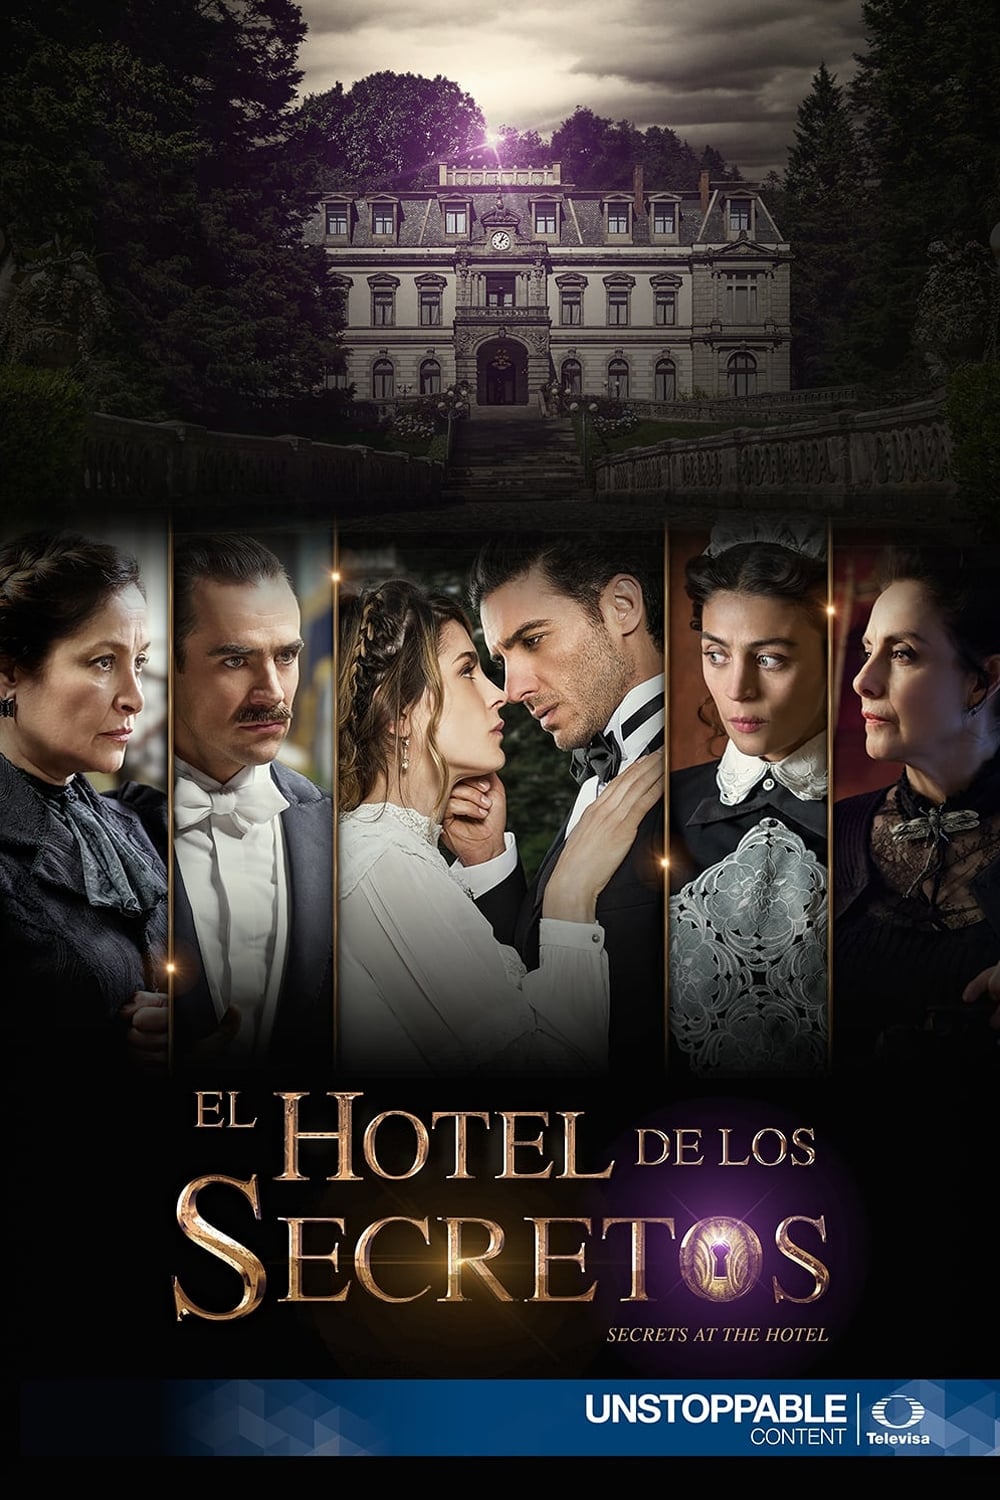 El hotel de los secretos TV Shows About Mexico